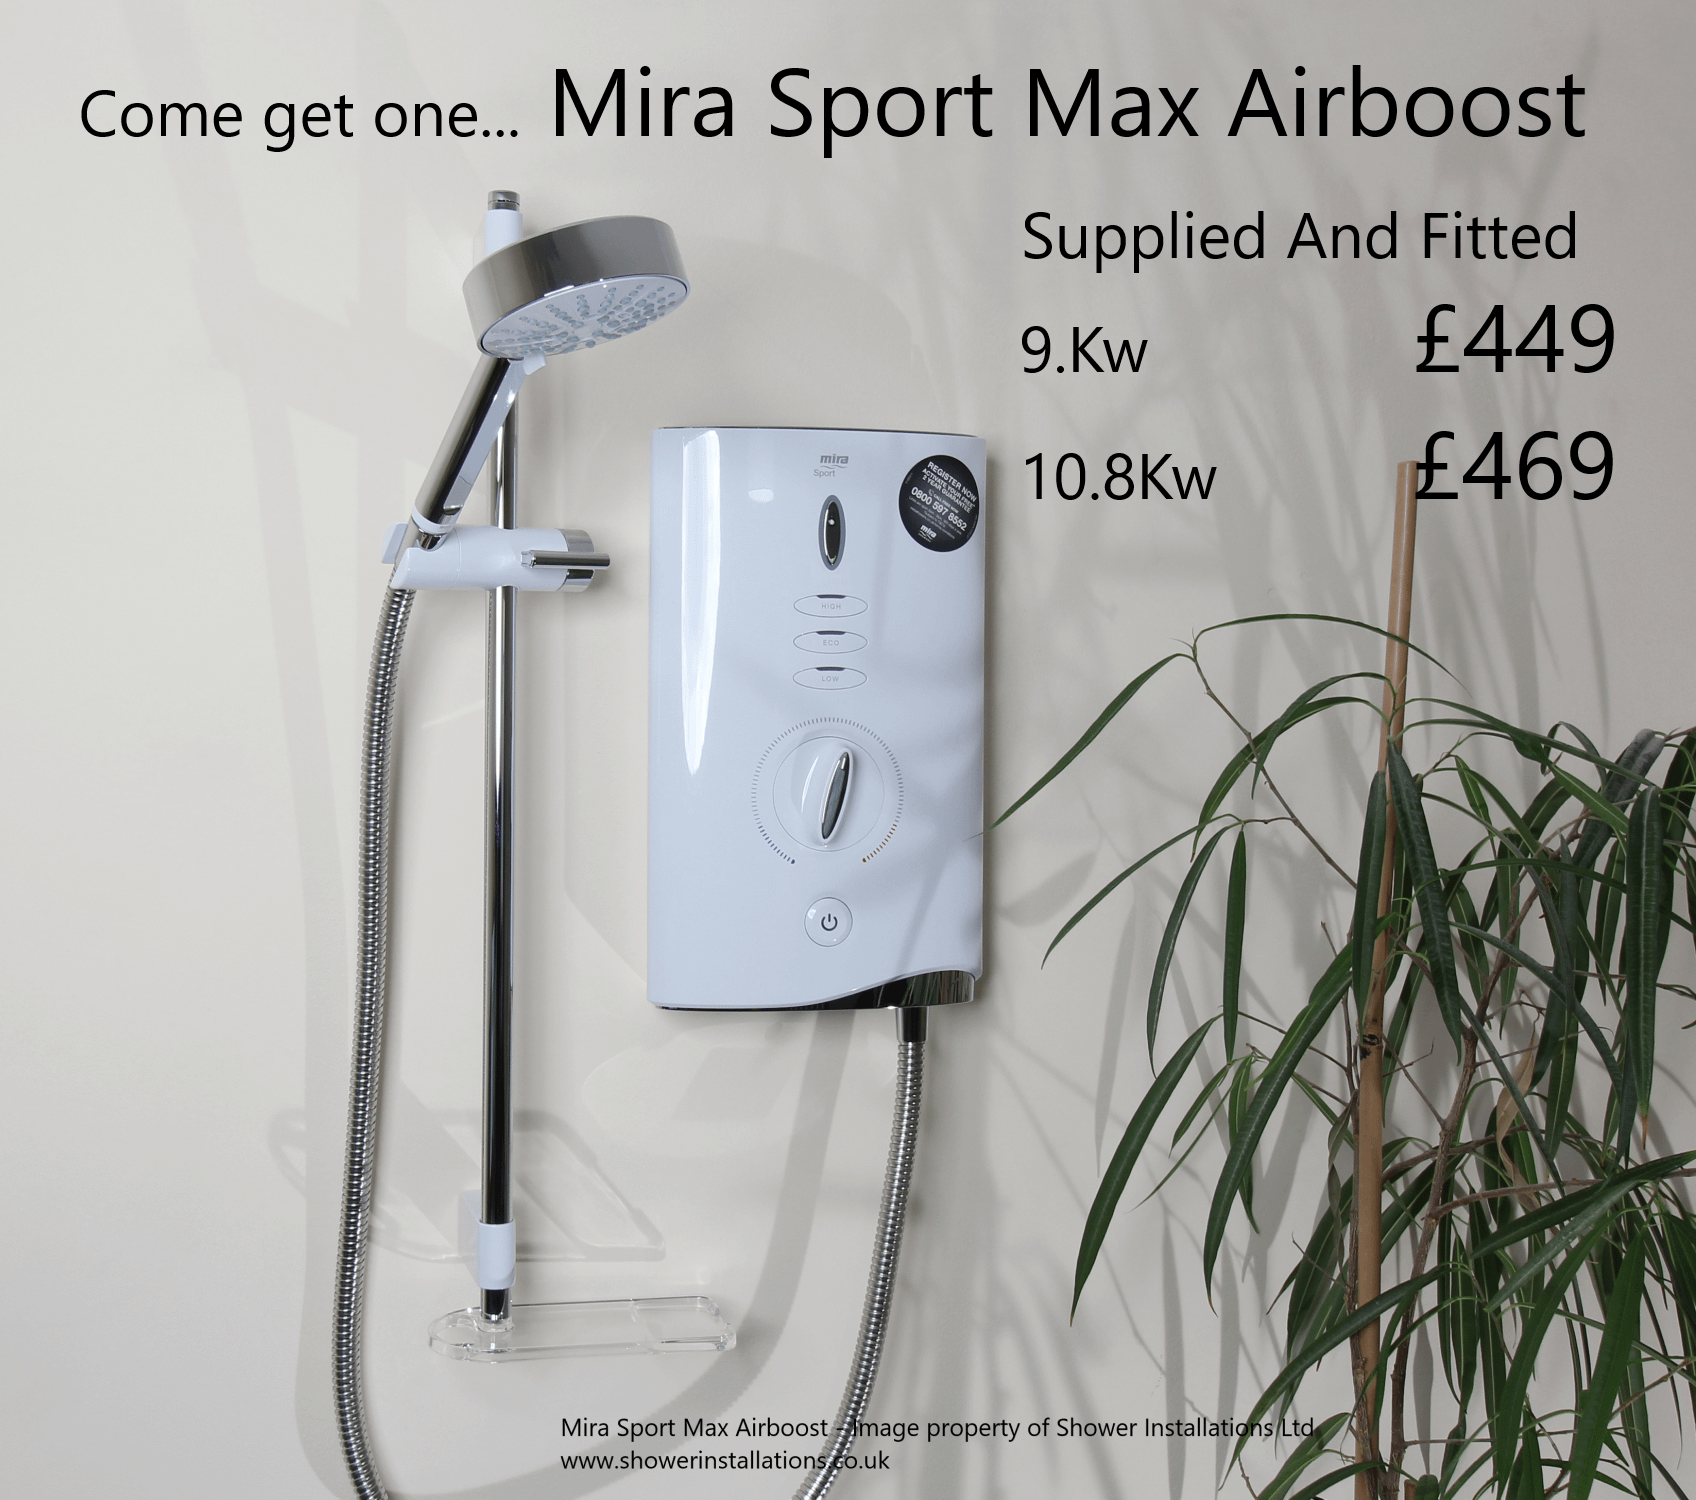 #Mira Sportmax + Airboost